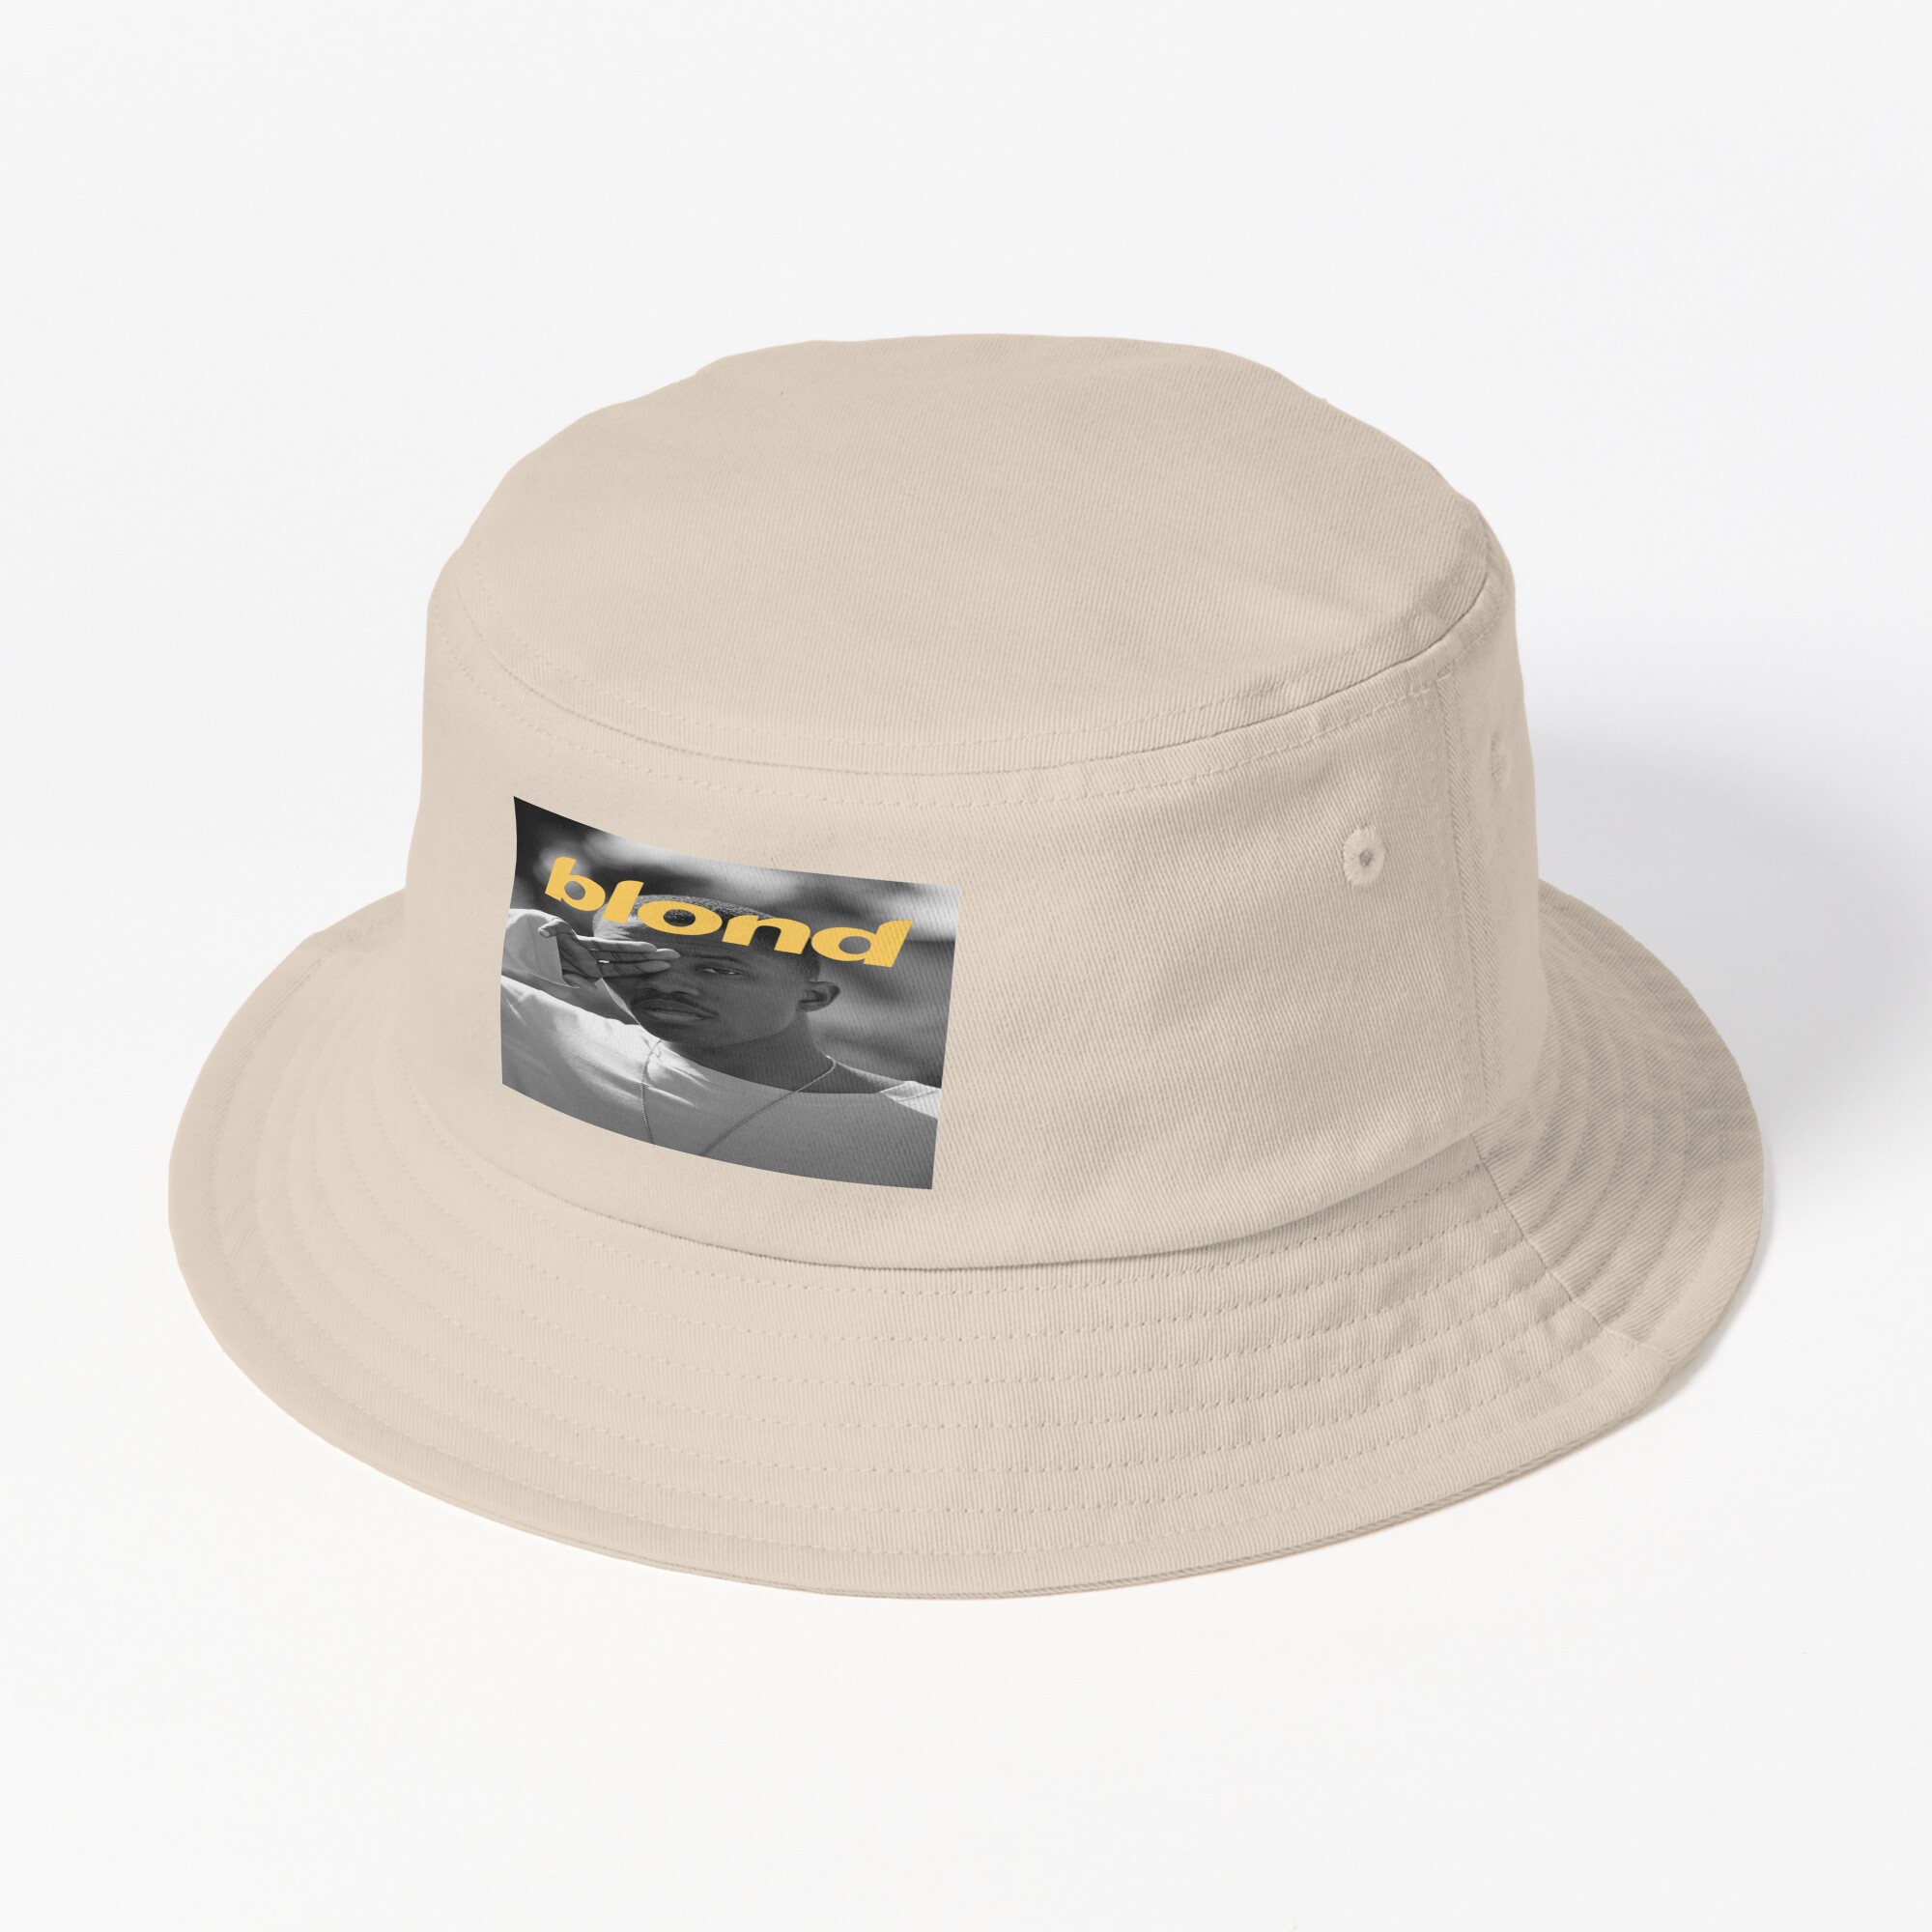 bucket hat - Frank Ocean Merch